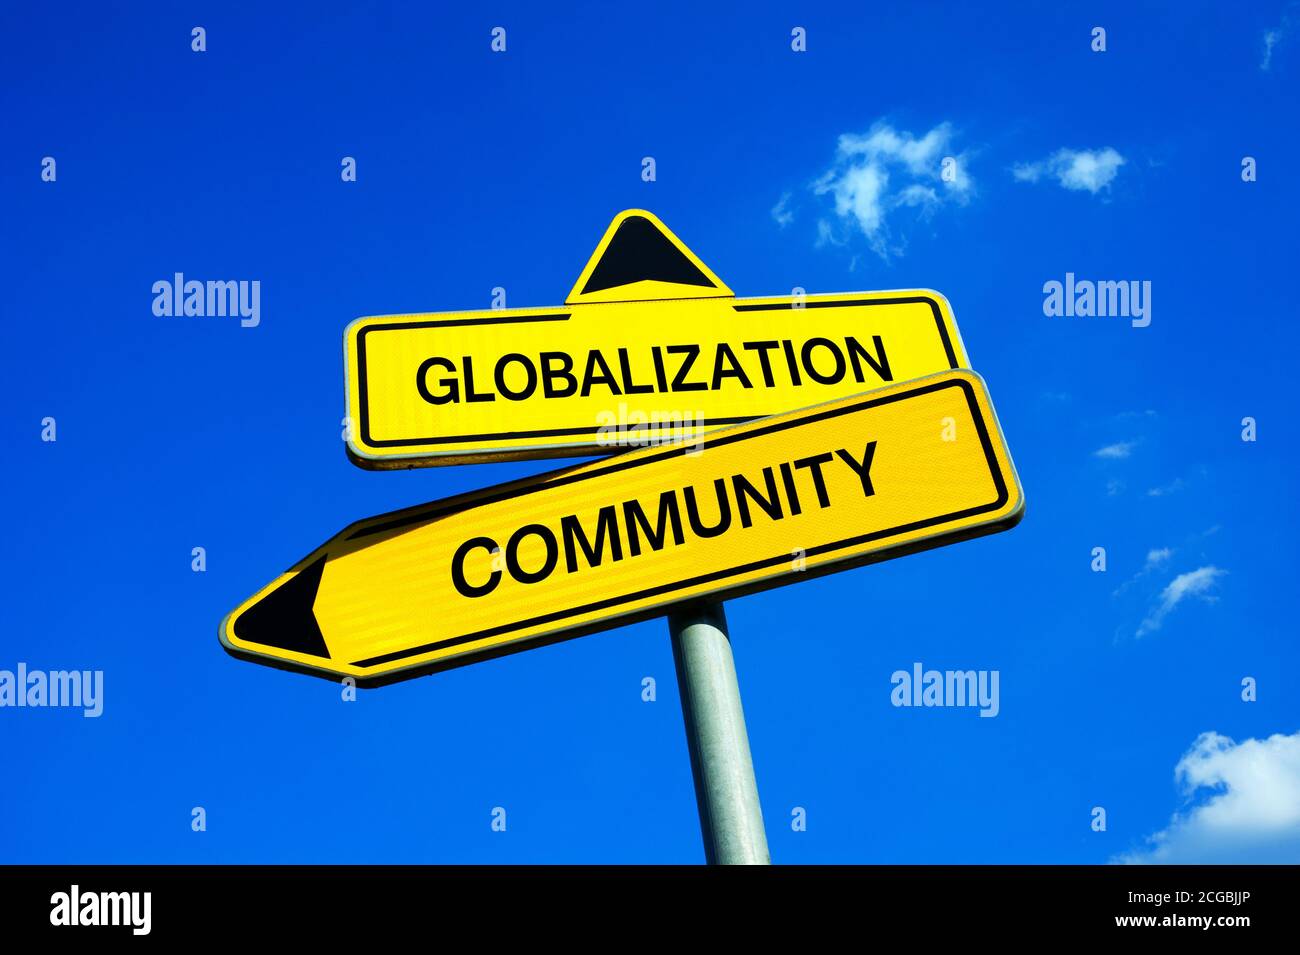 Globalisierung oder Gemeinschaft - Verkehrszeichen mit zwei Optionen - globalisierte Welt und freier Markt des Neoliberalismus vs Gesellschaft, Wirtschaft und Identität von com Stockfoto